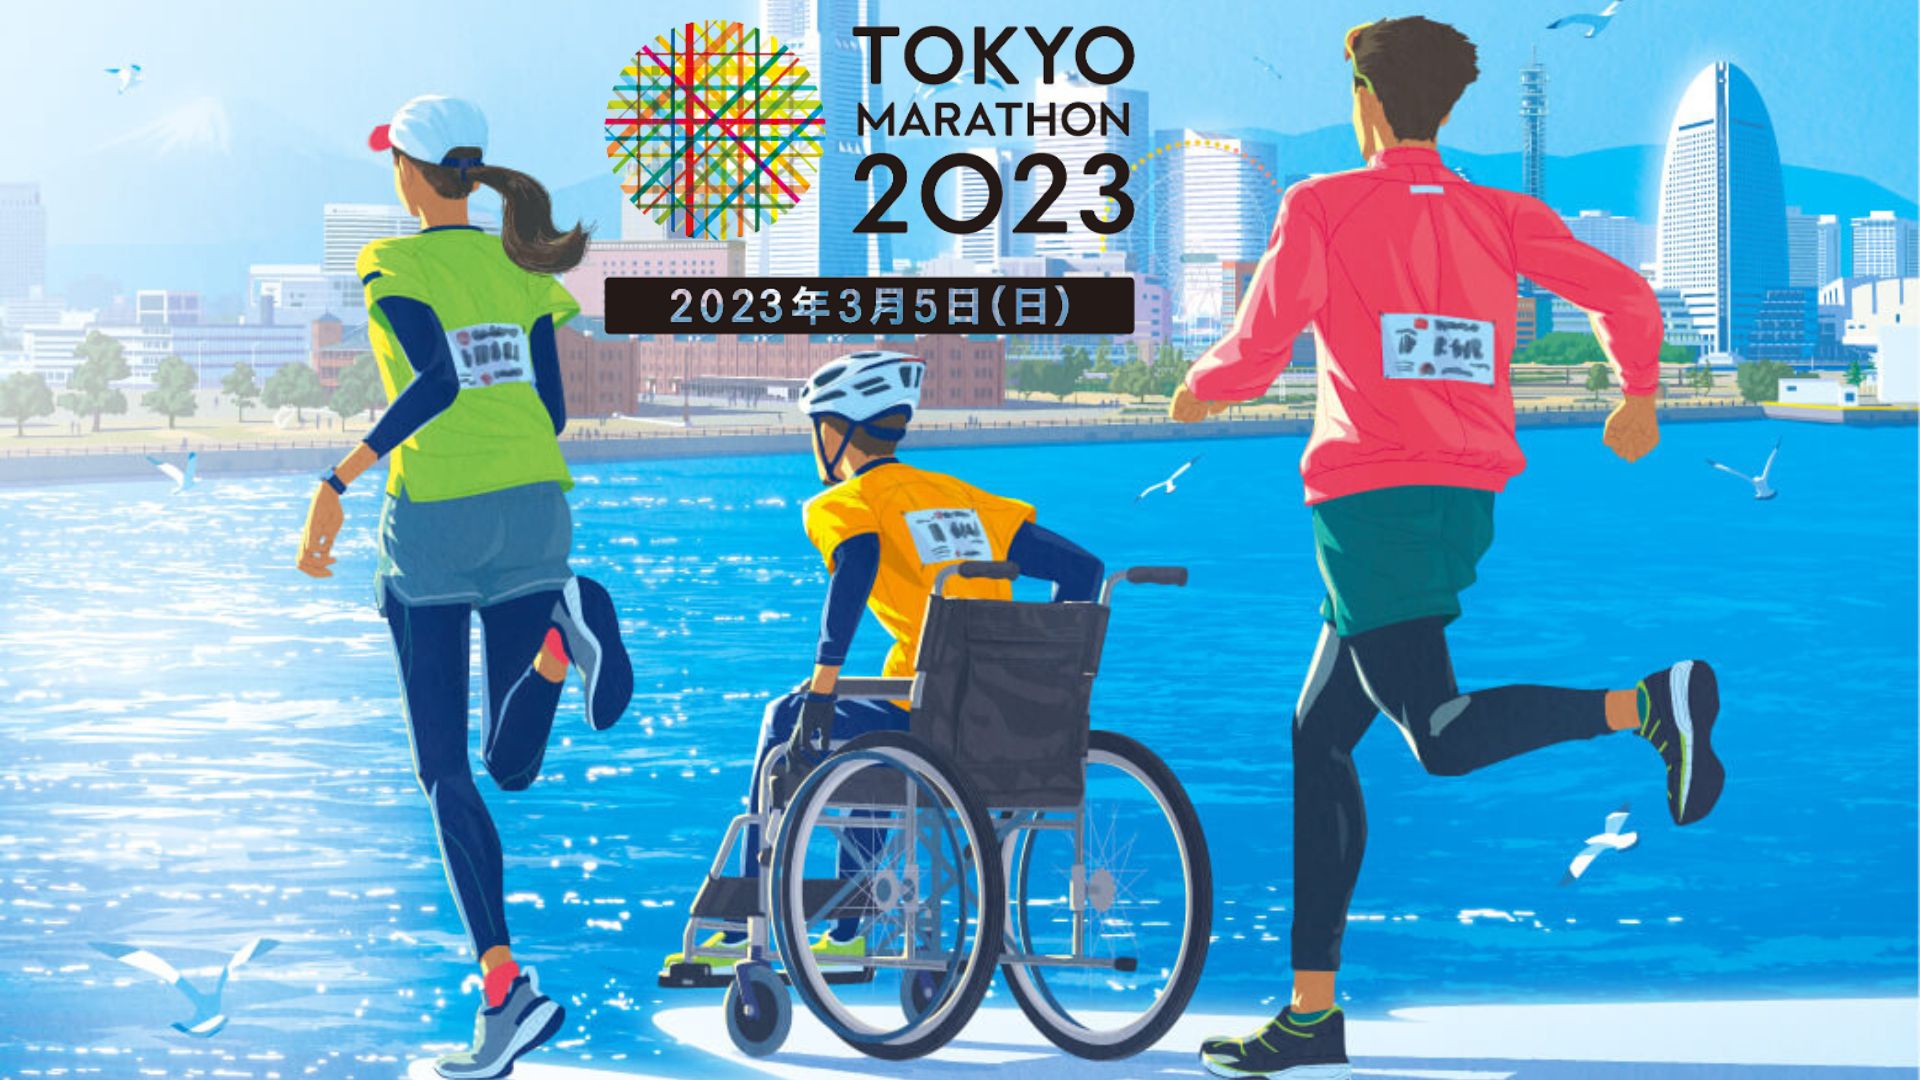 東京マラソン2023 日時、生放送の観戦方法